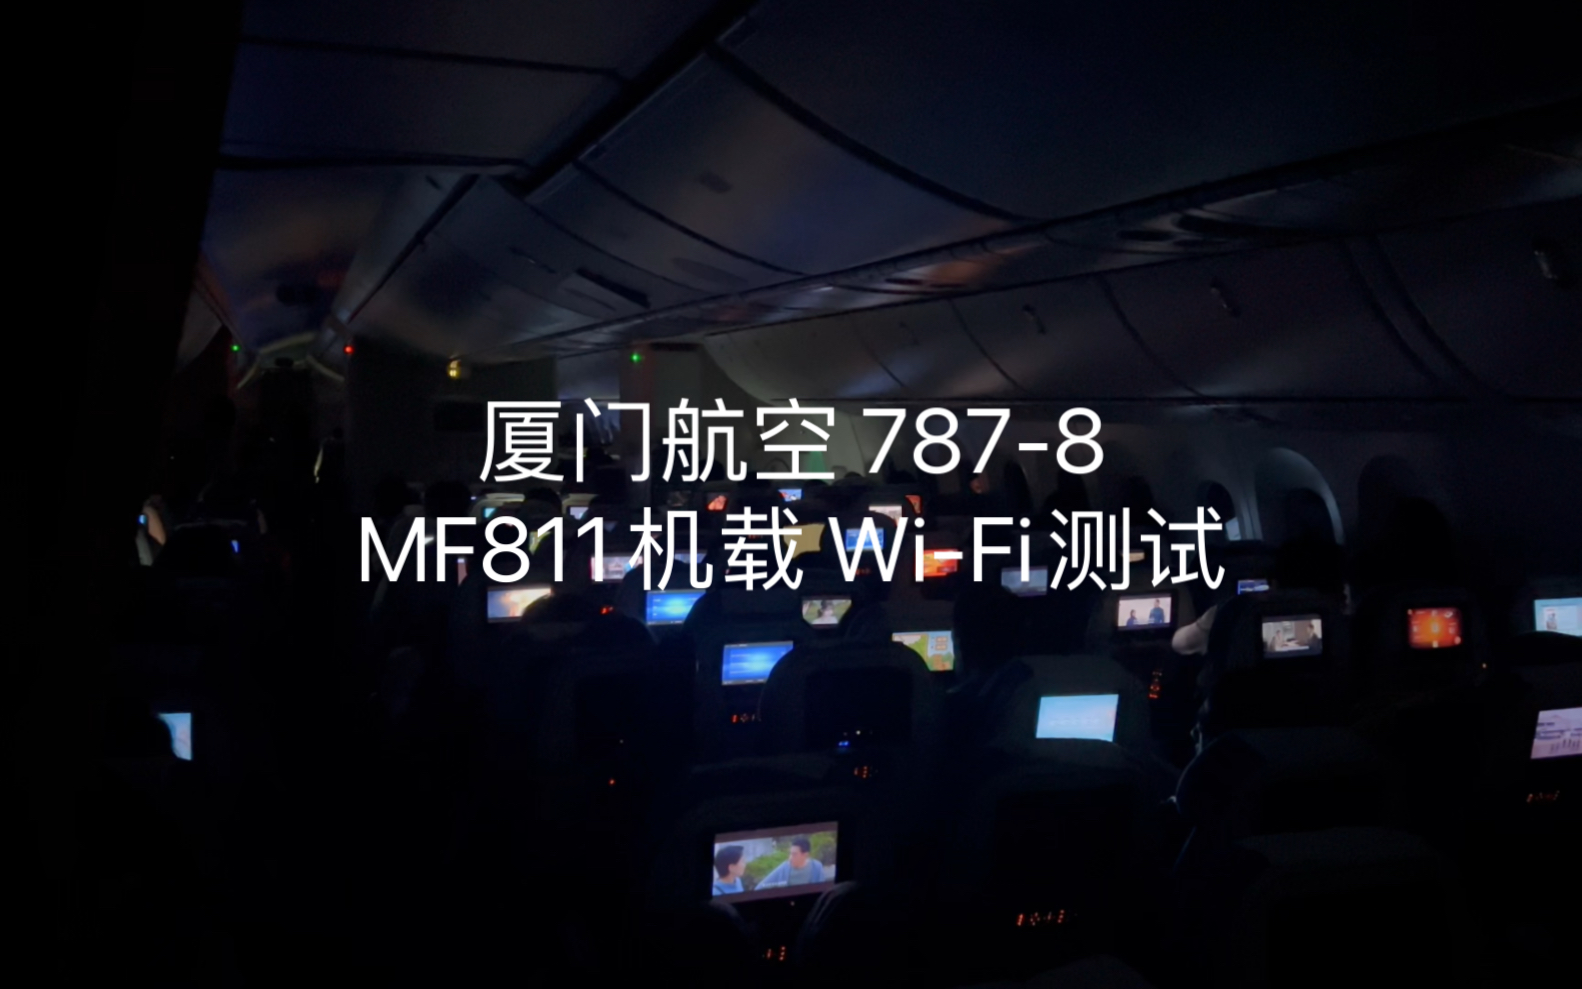 厦门航空 洲际航班MF811 机载Wi-Fi上传视频